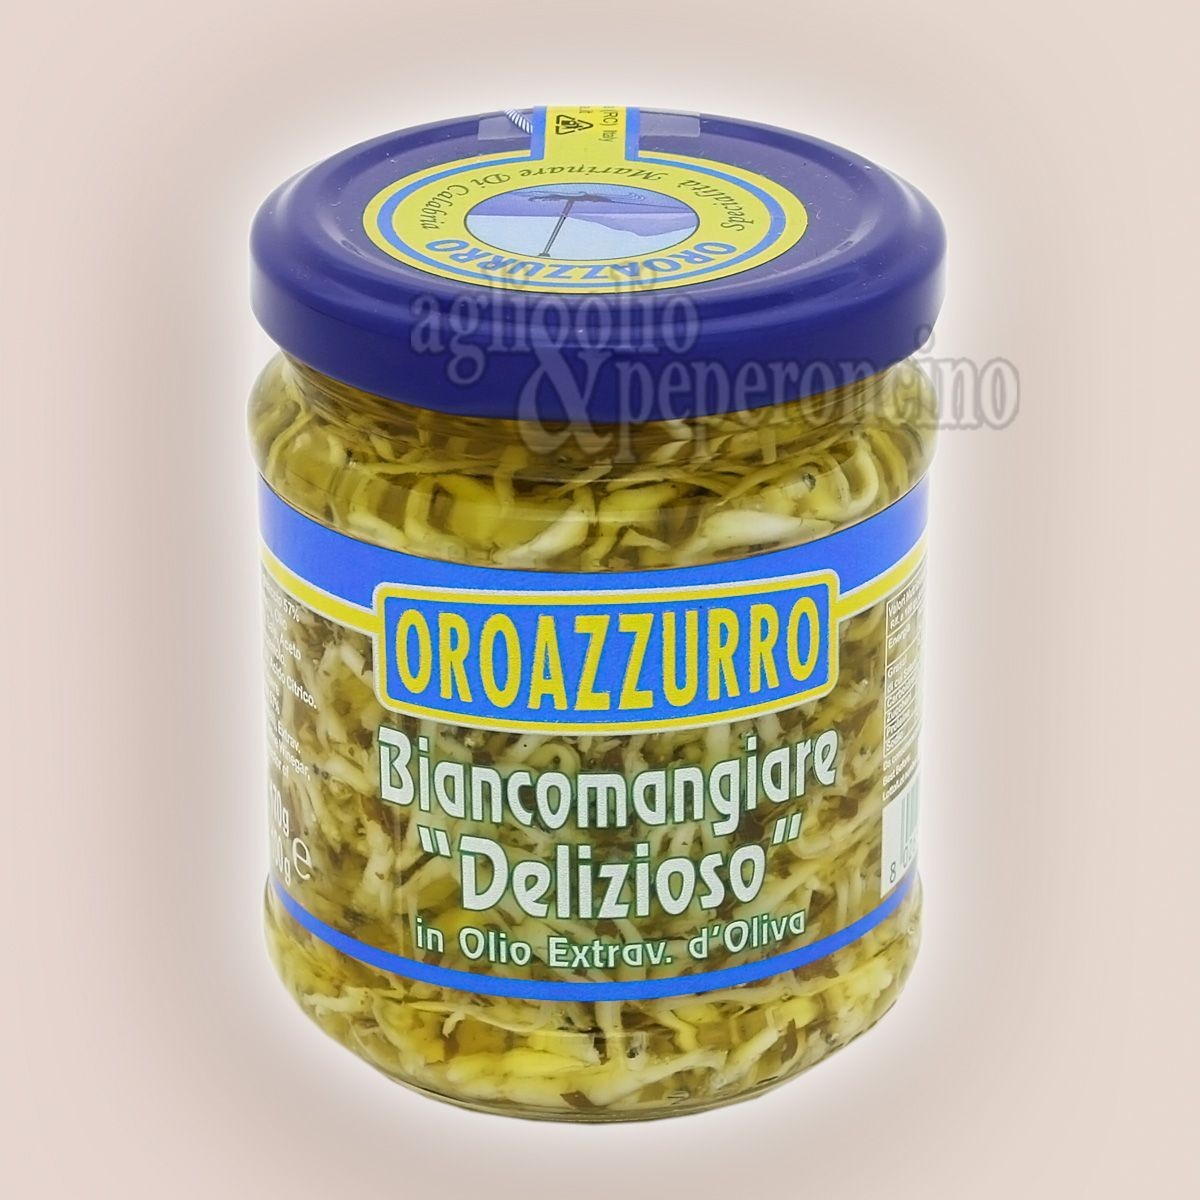 Biancomangiare delizioso in Olio extravergine d'oliva Oroazzurro - Specialità ittica calabrese